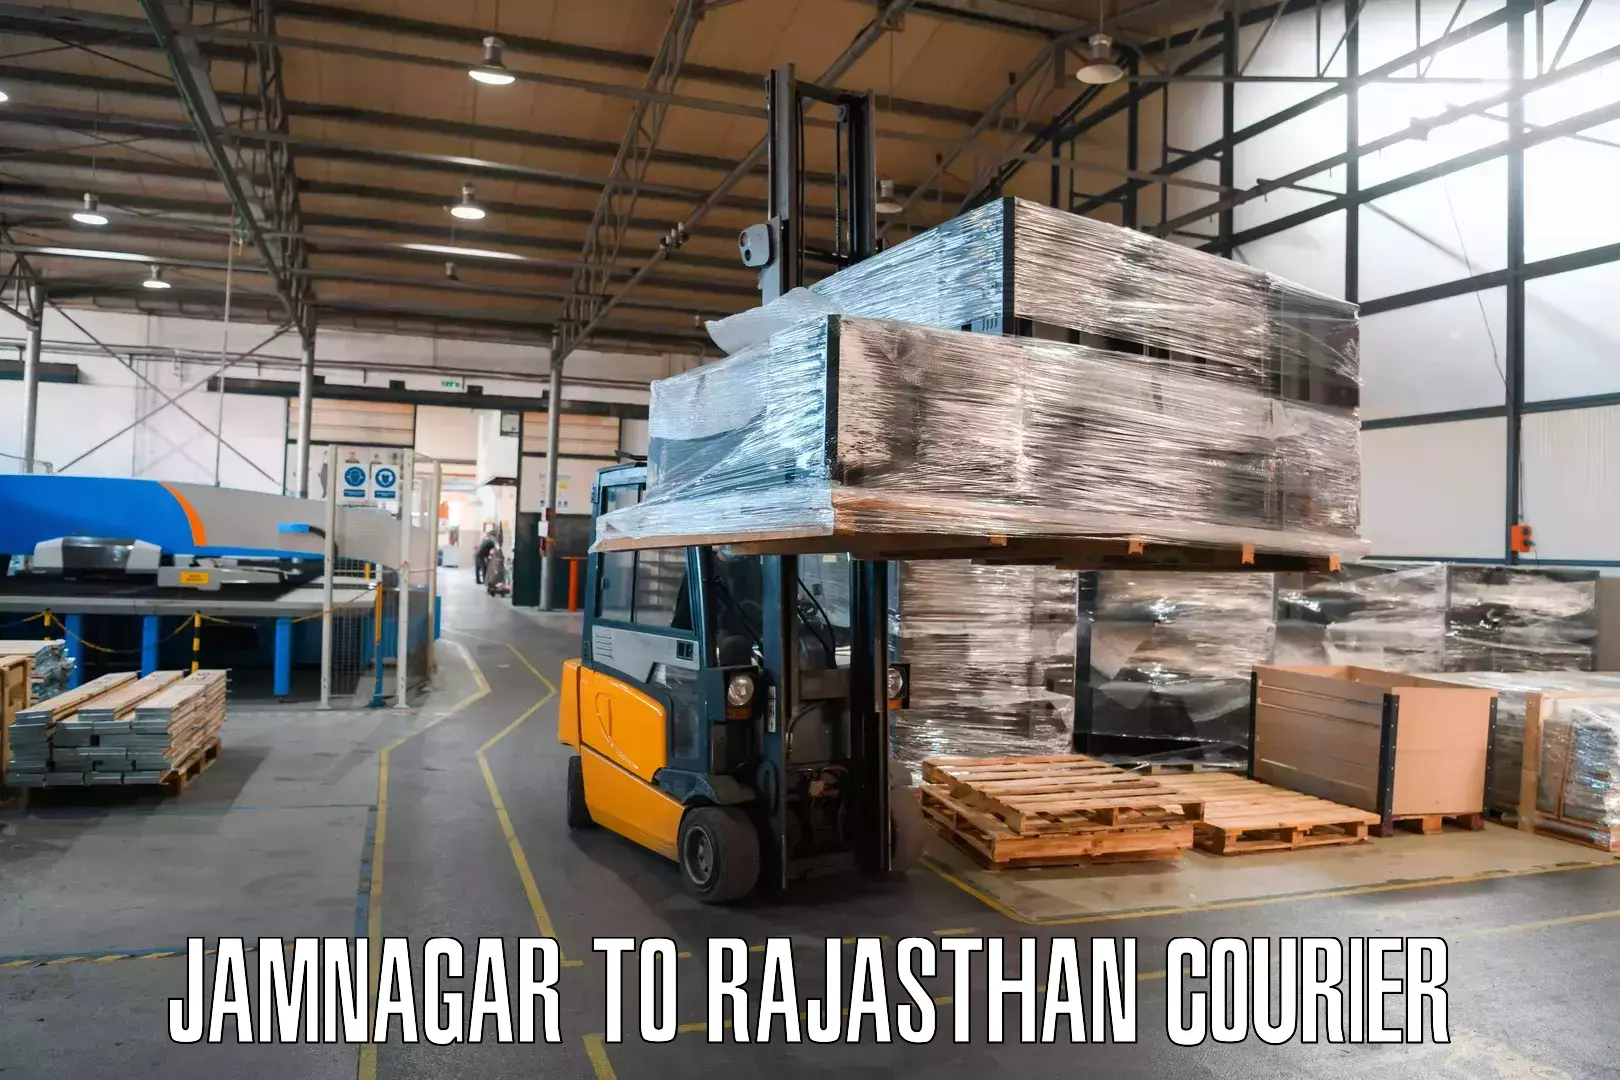 Global logistics network Jamnagar to Shahpura Jaipur